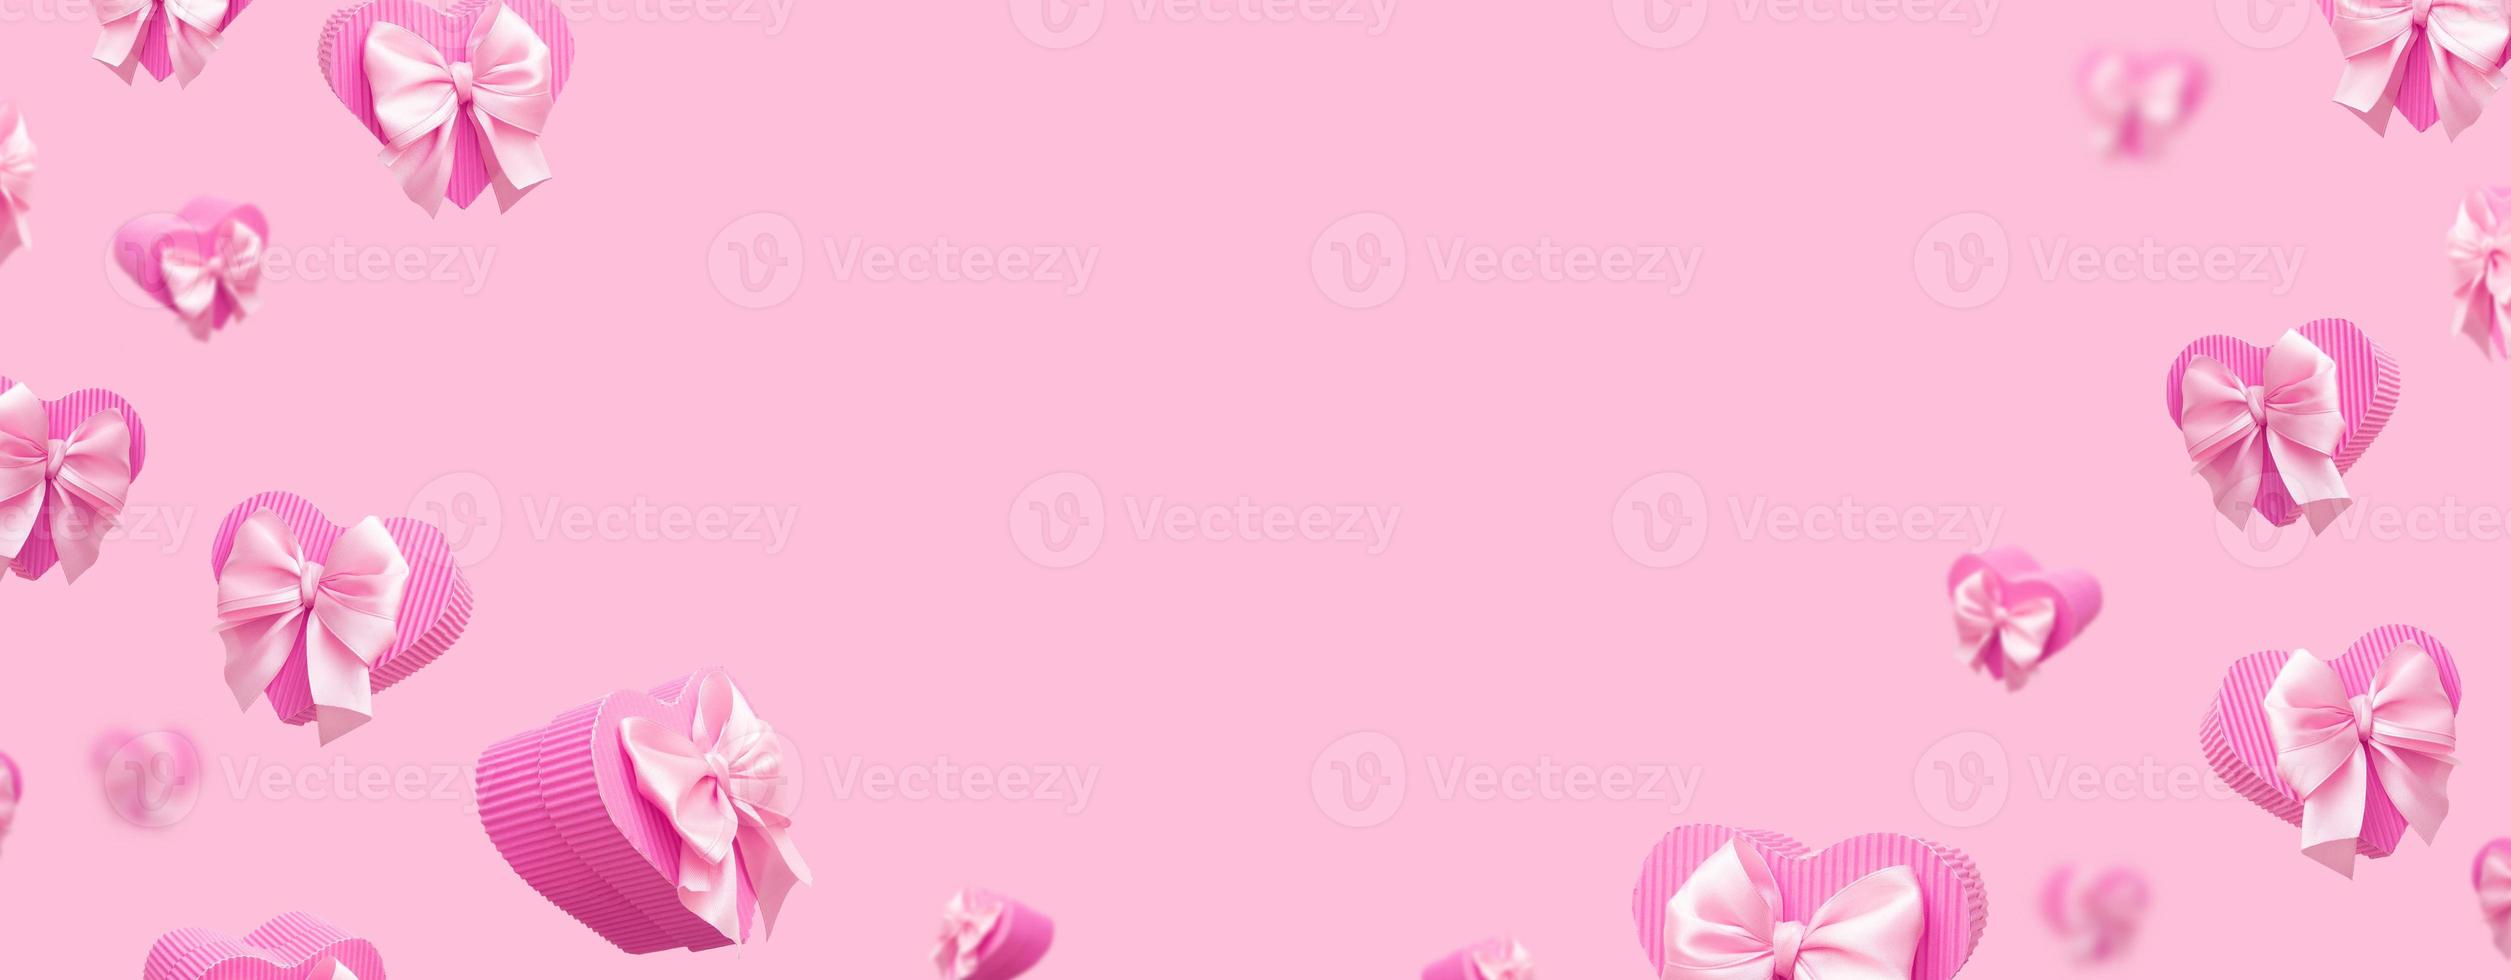 Banner mit fliegenden rosa herzförmigen Geschenkboxen isoliert auf rosa Hintergrund. trendige monochrome valentinstaggrußkarte oder banner foto